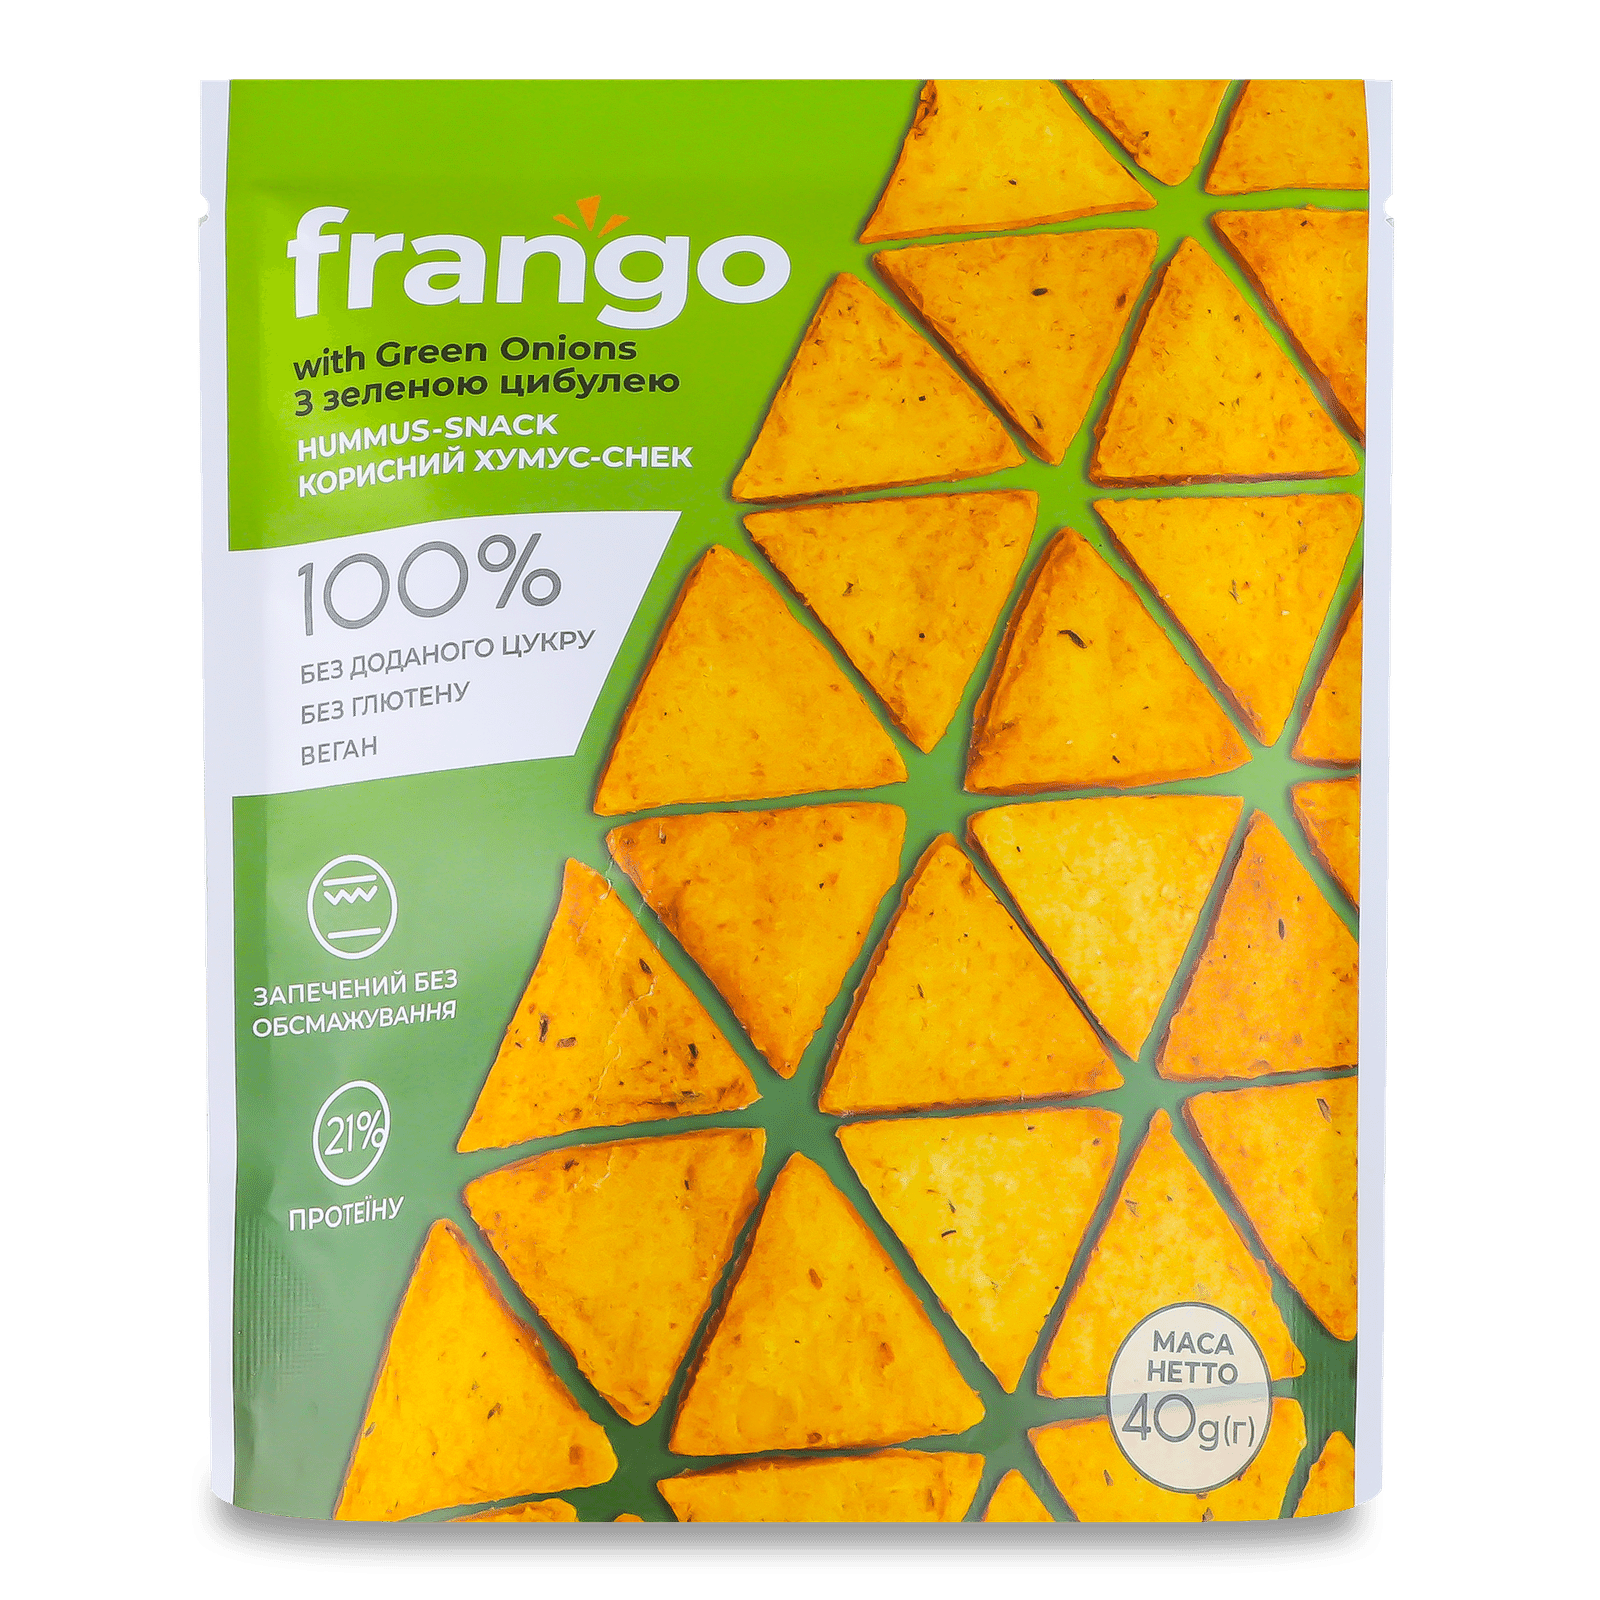 Крекер «Лавка традицій» Frango «Хумус-снек» з зеленою цибулею - 1